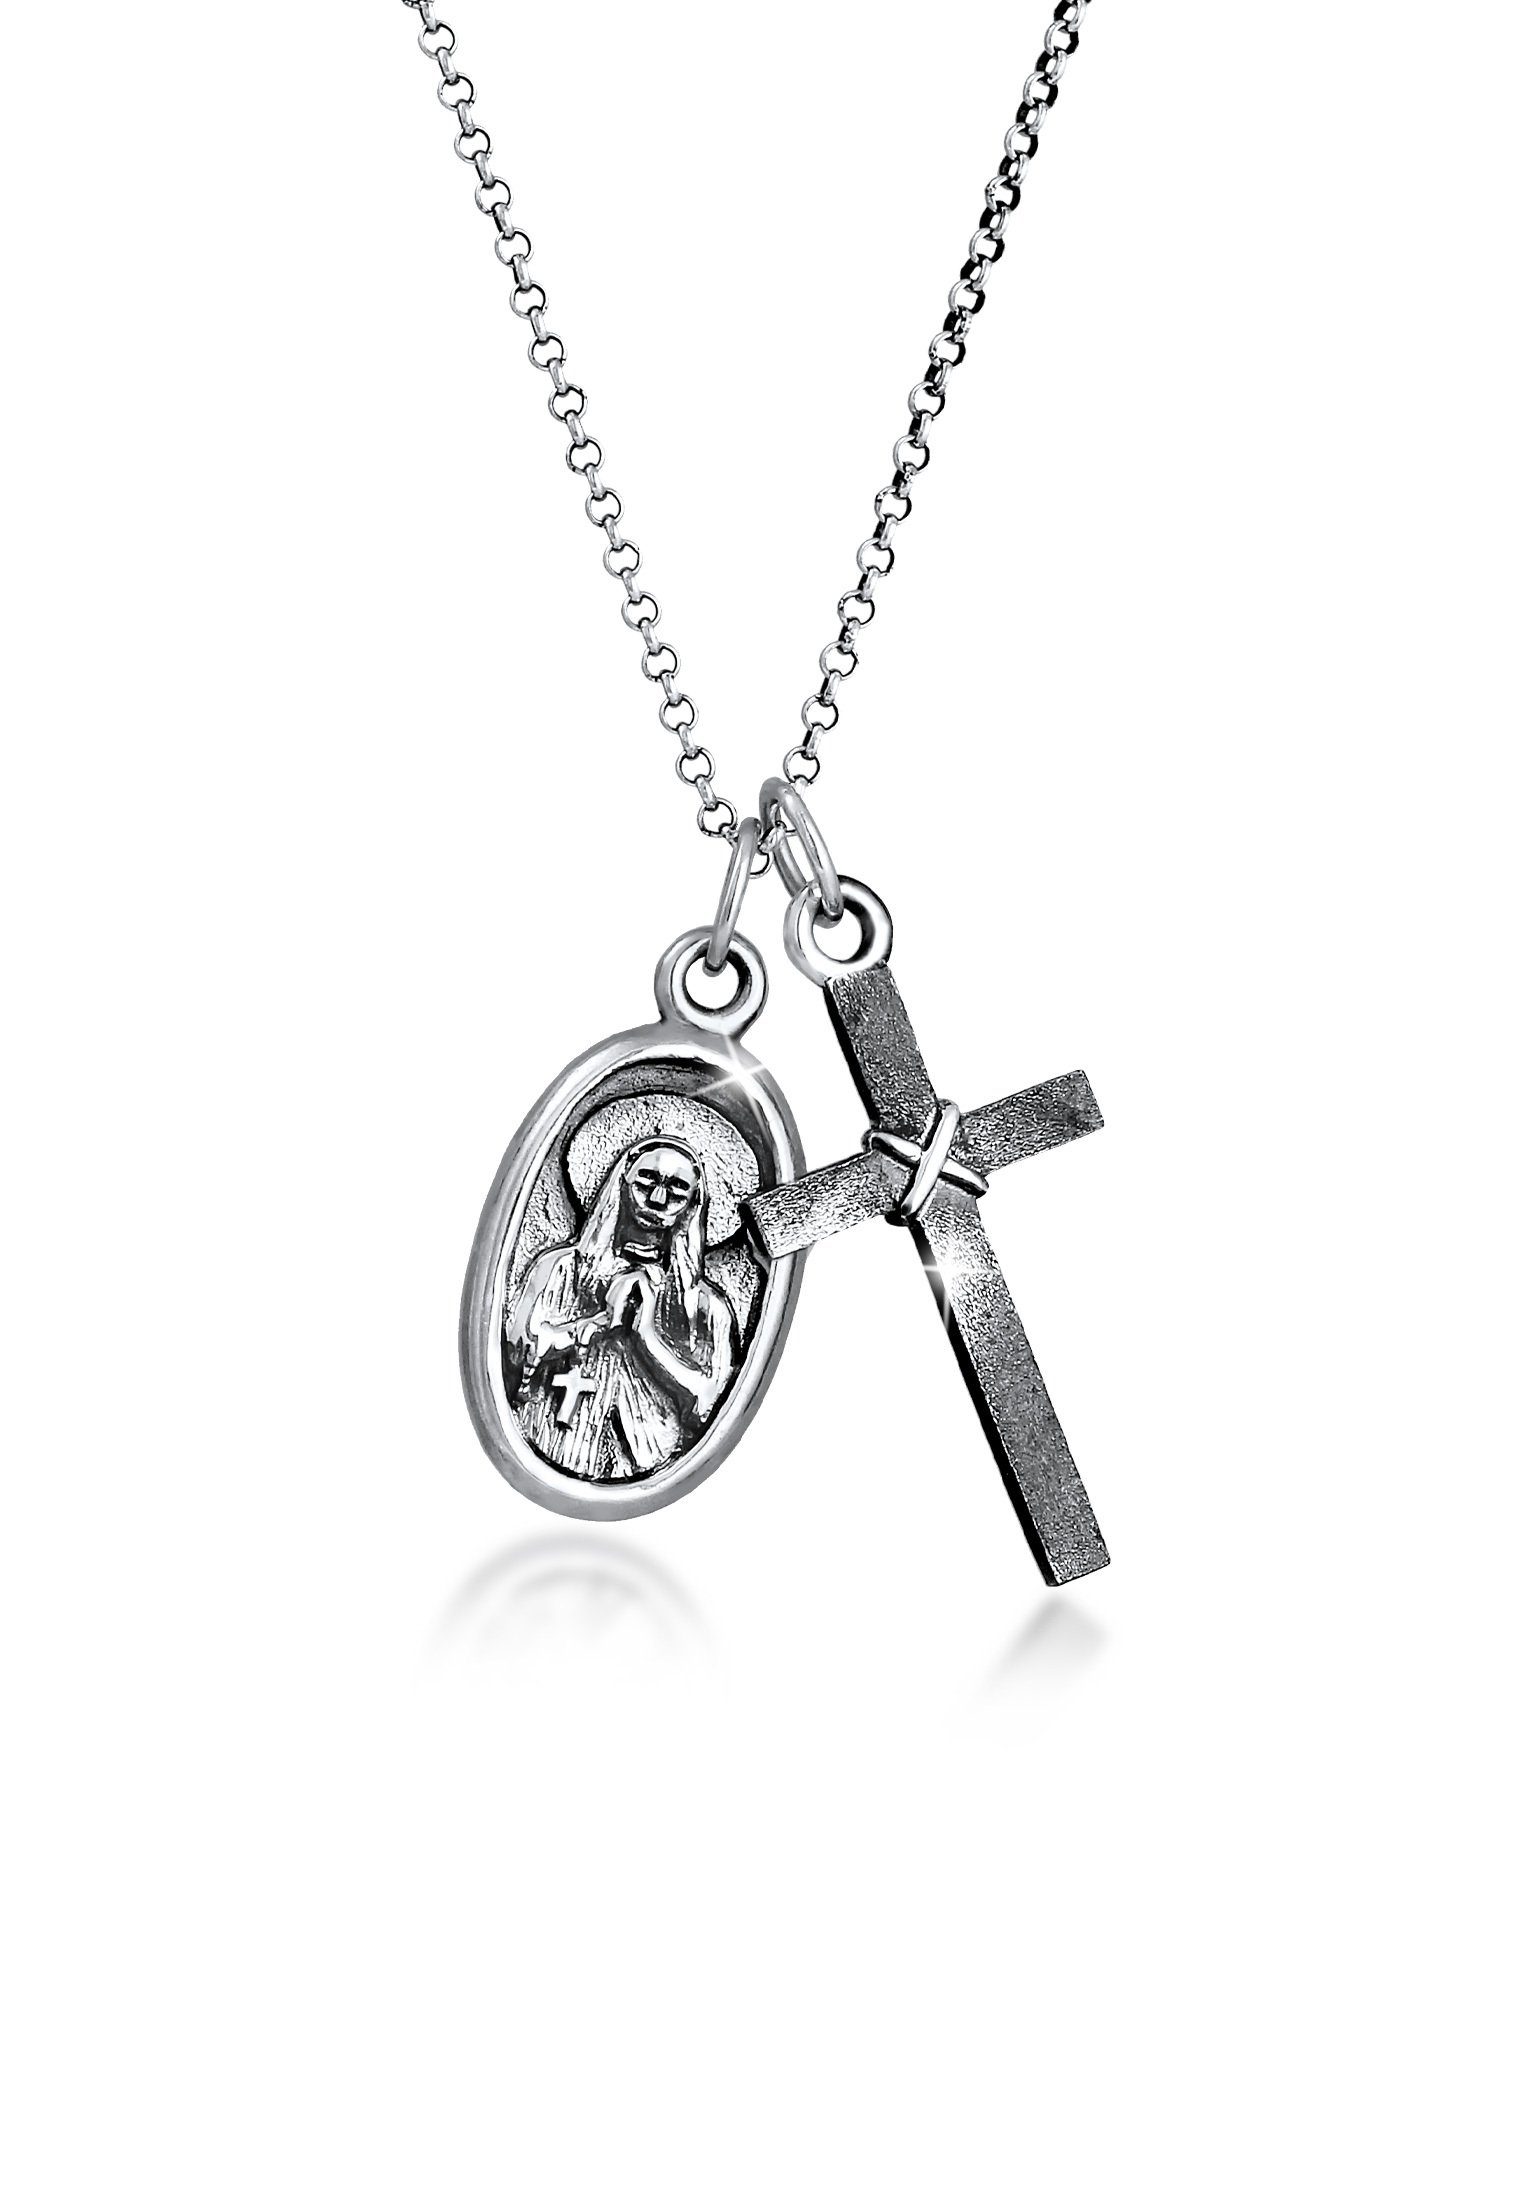 Kuzzoi Lange Kette Herren Marienbild Kreuz Schutz Symbol 925 Silber